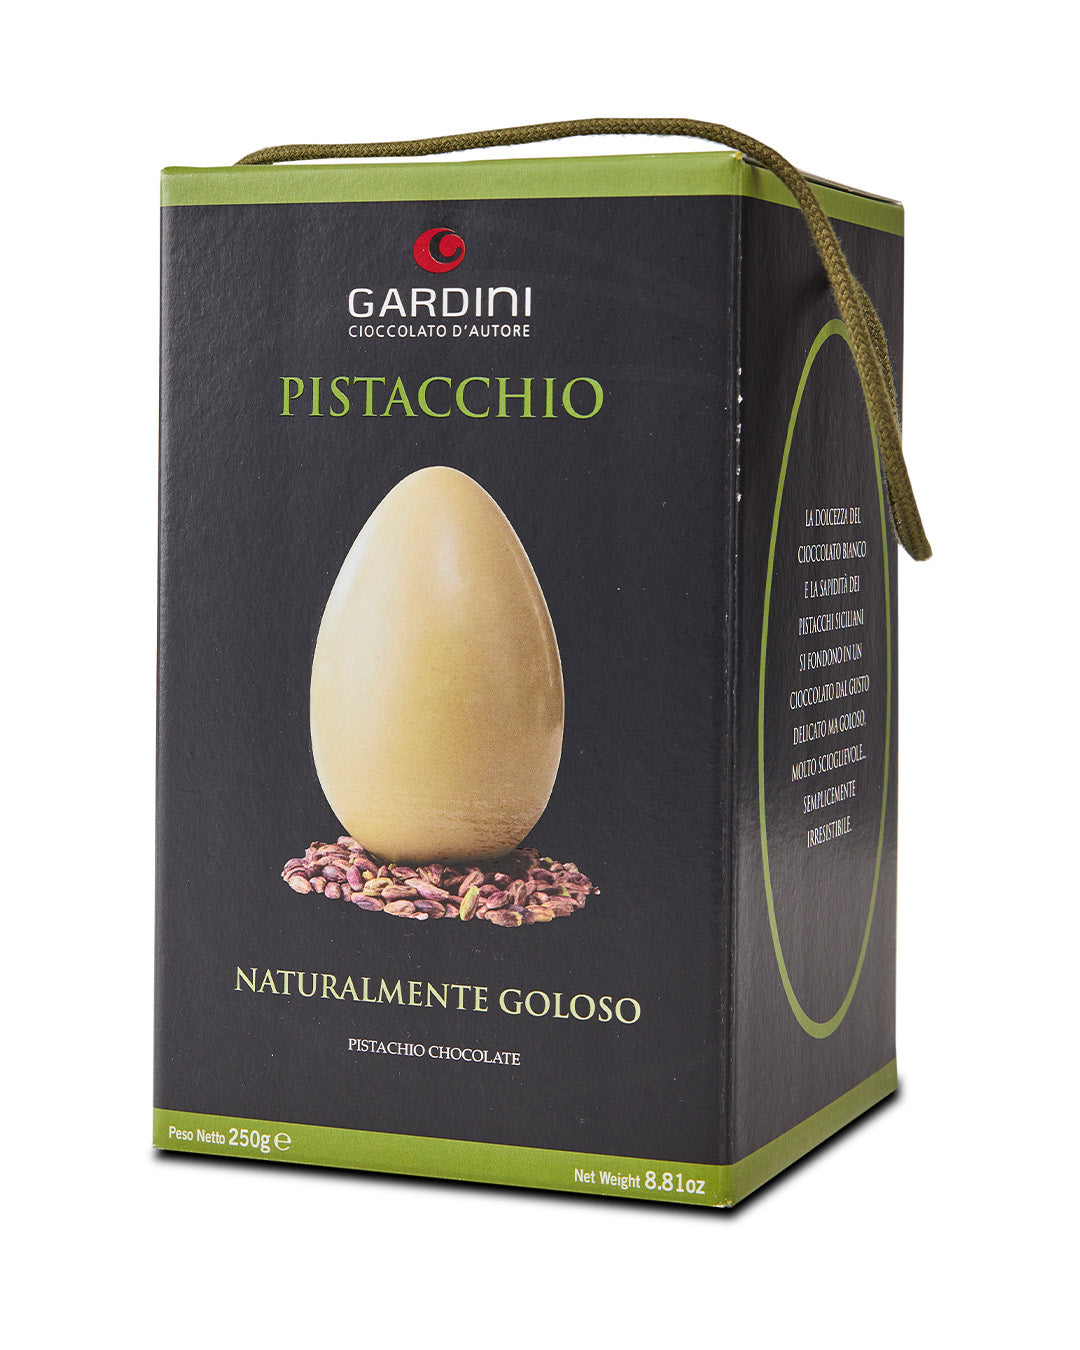 Uovo di Cioccolato Bianco al Pistacchio "Naturalmente Goloso" - Gardini